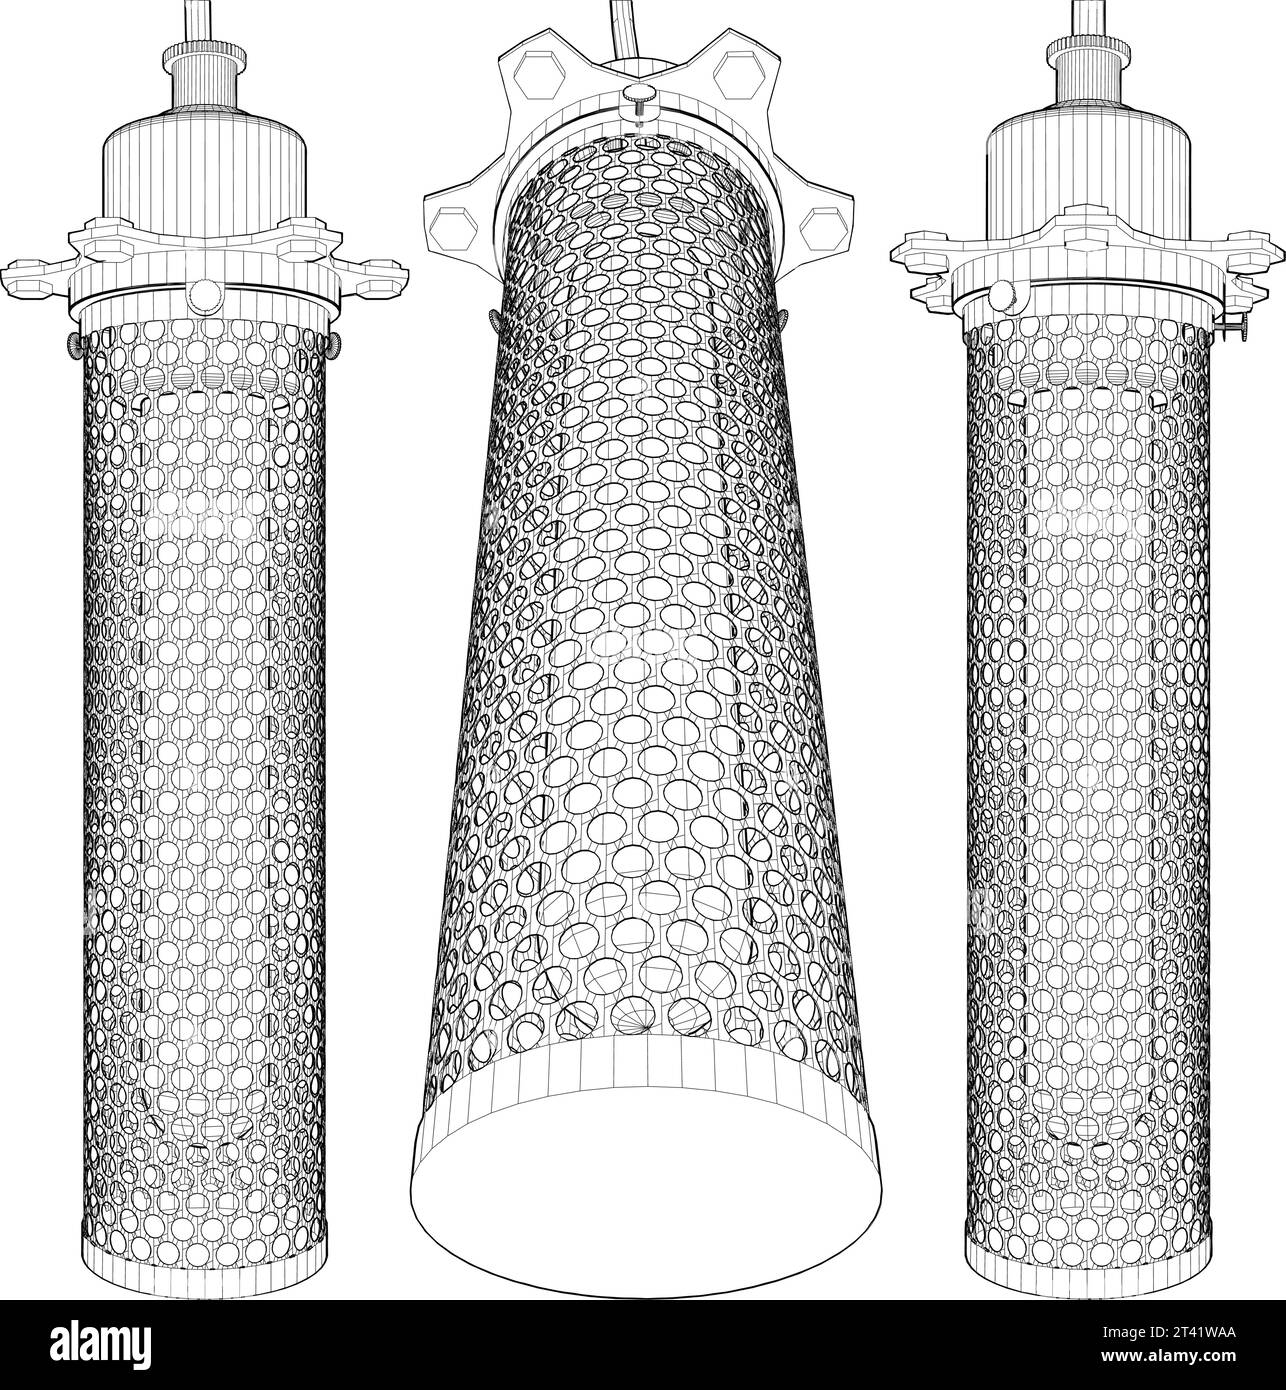 Luster Chandelier Vector. Lampada cilindrica in lamiera perforata. Sembra Una Mosquito Net. Illustrazione vettoriale di Un candeliere. Illustrazione Vettoriale